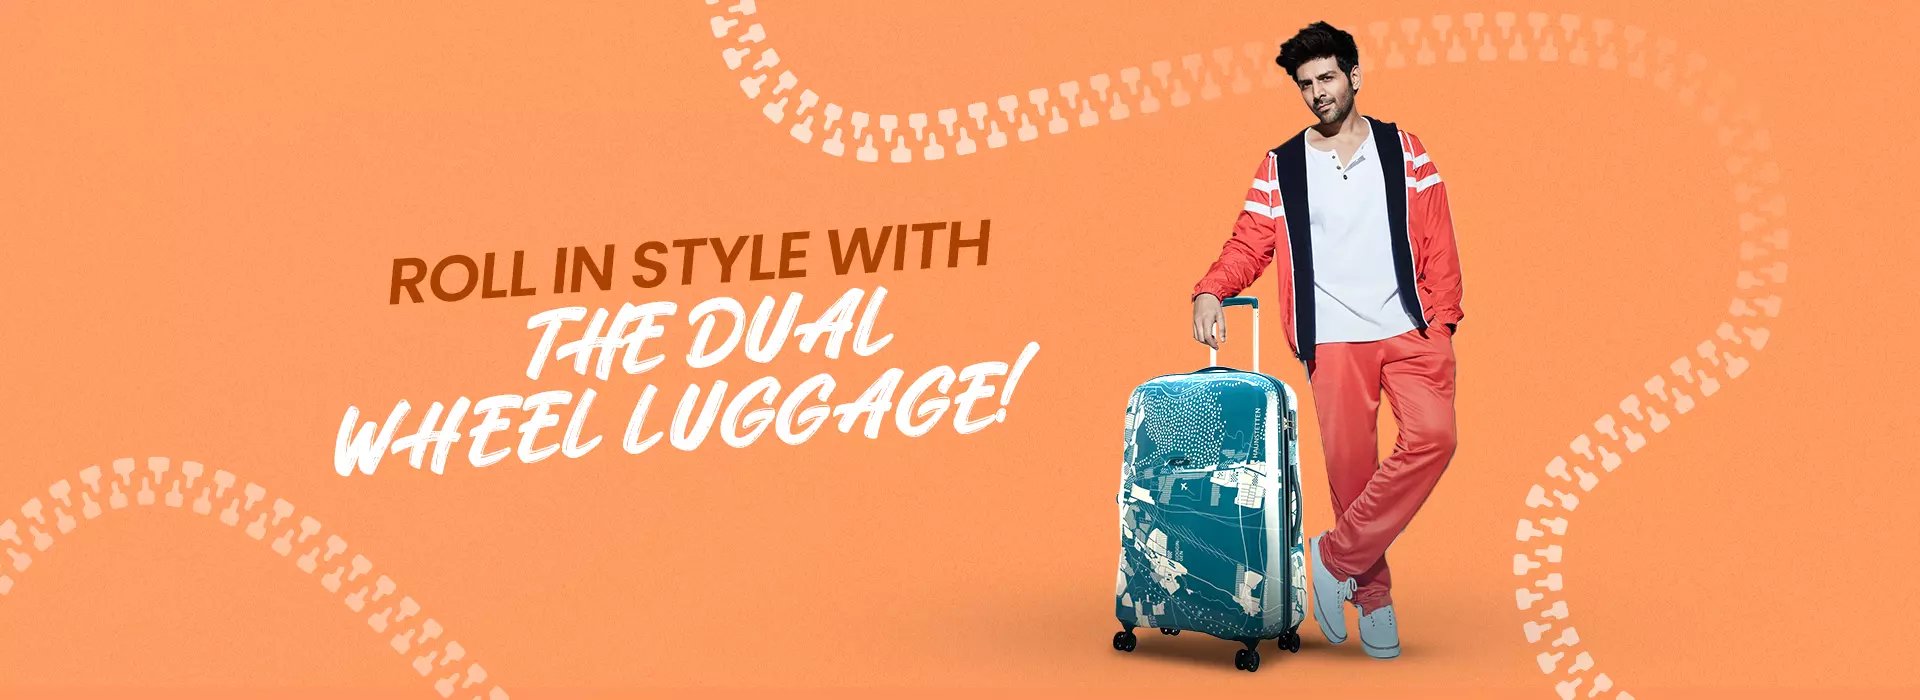 Dual Wheels Luggage